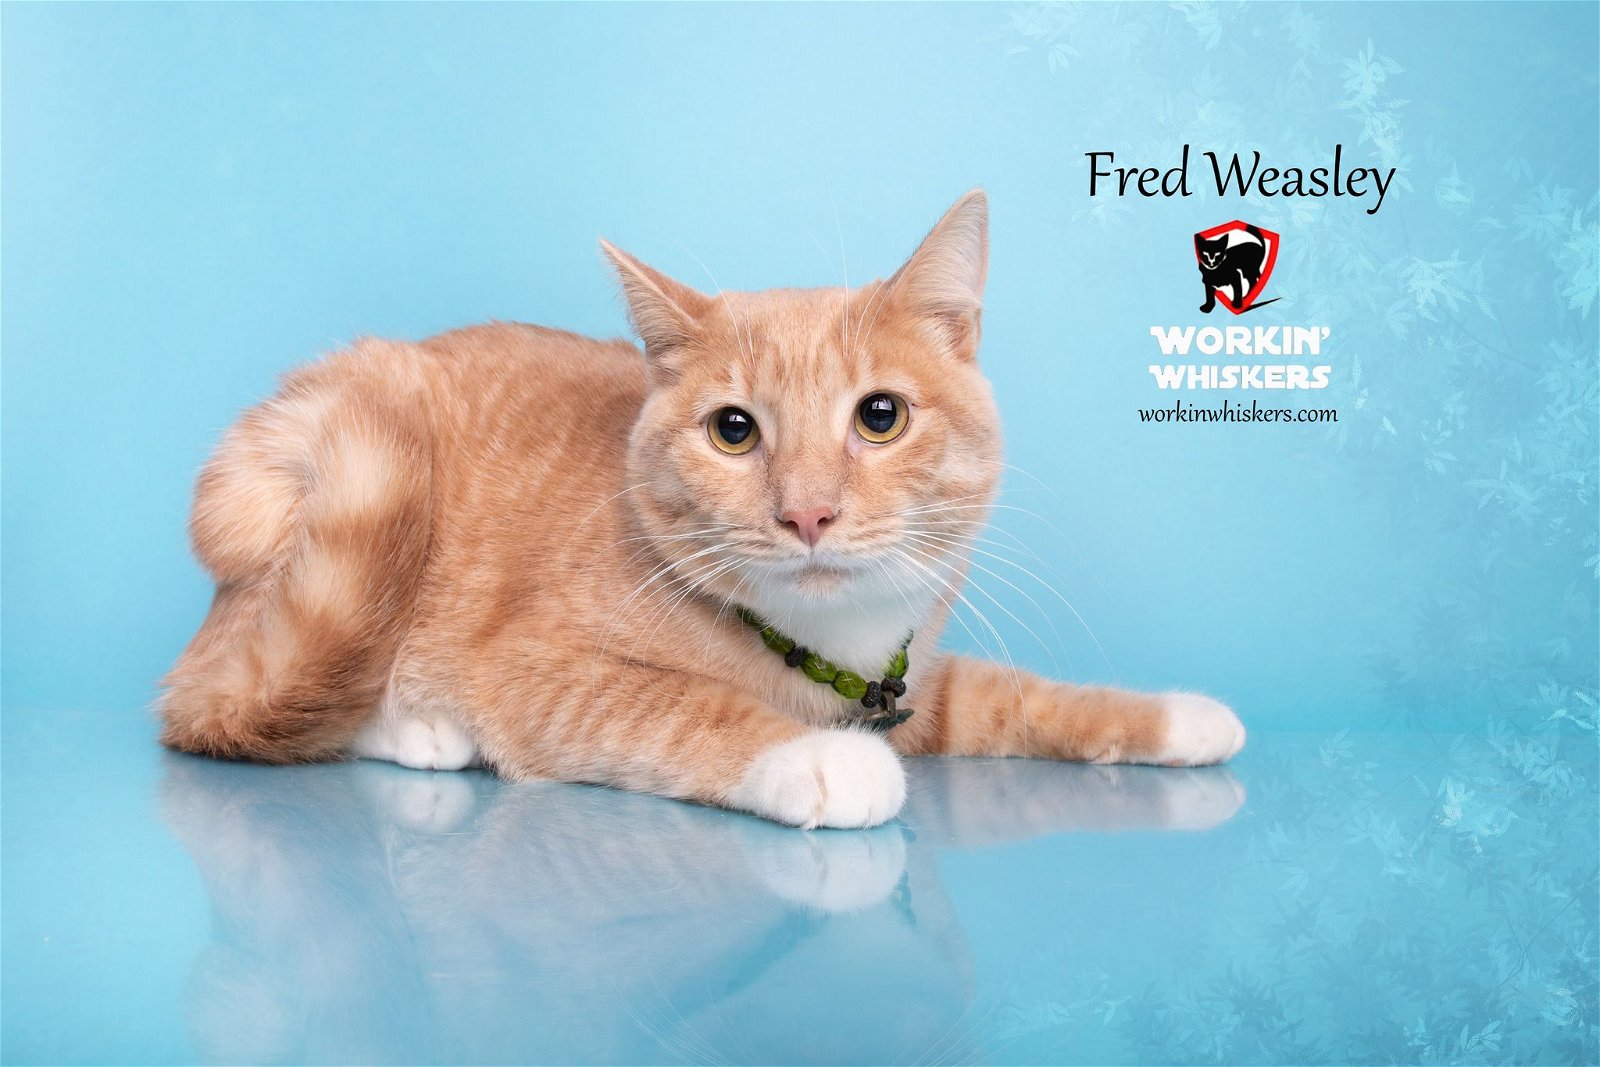 adoptable Cat in Hemet, CA named FRED WEASLEY